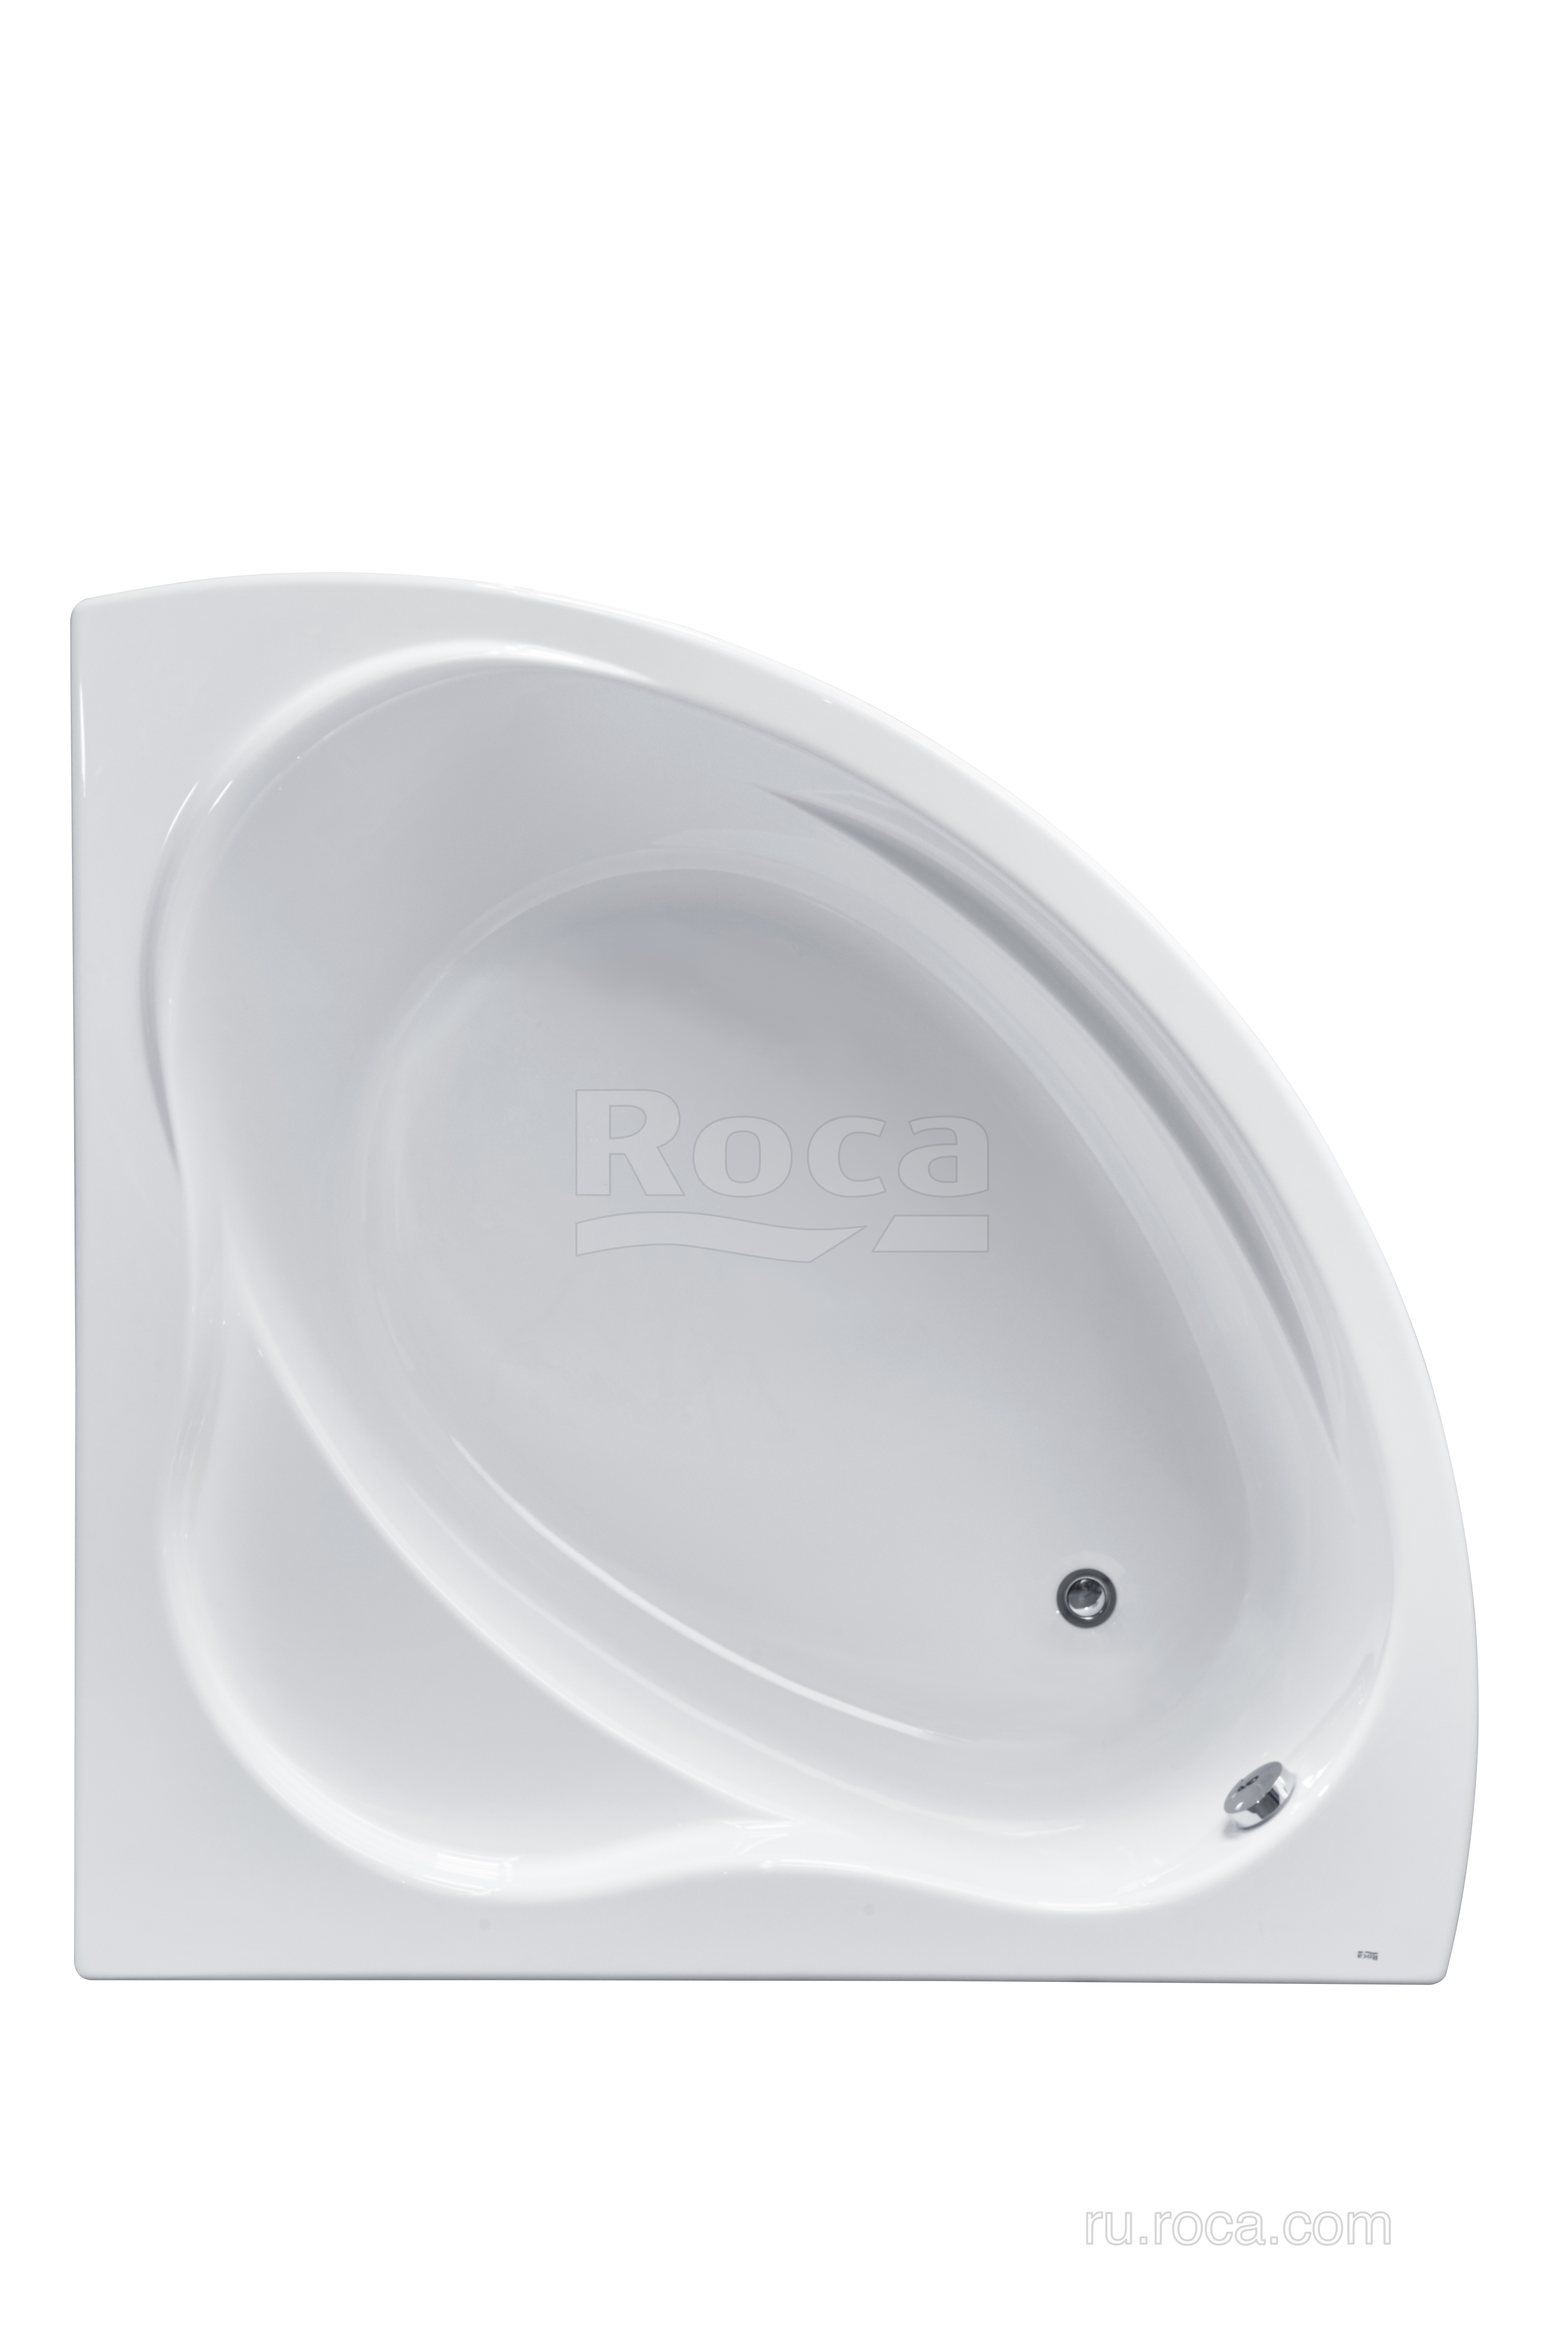 Акриловая ванна Roca Bali 150x150 симметричная белая 248639000